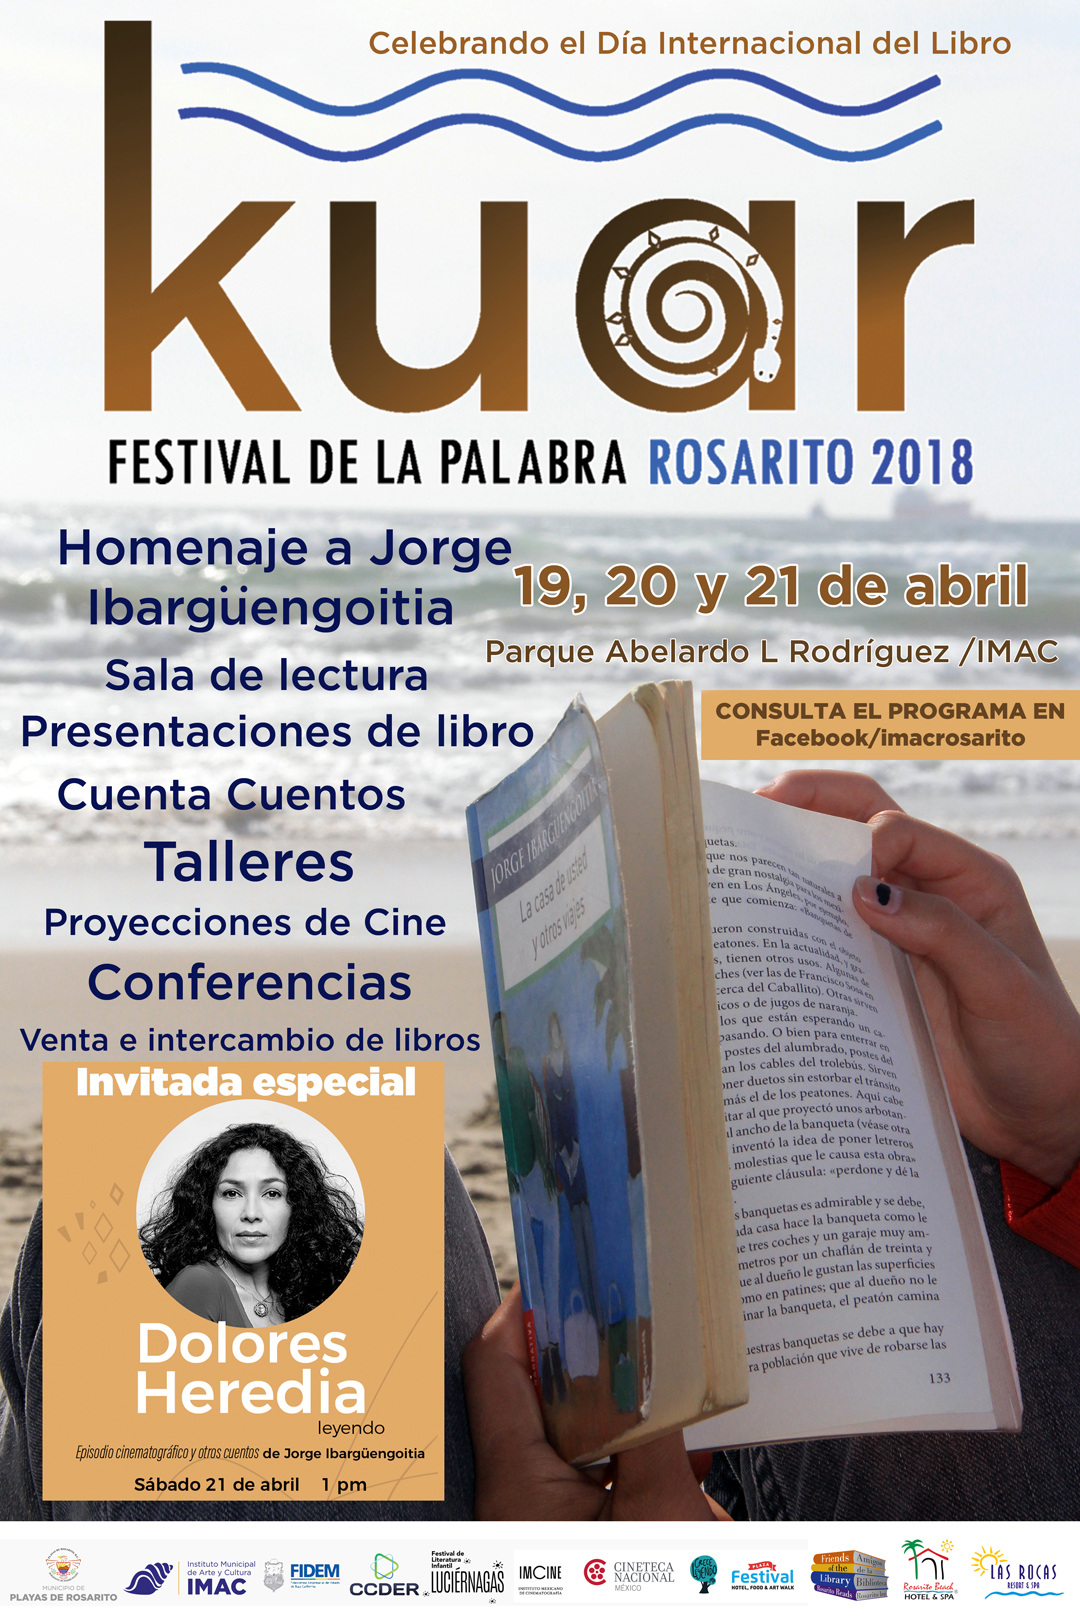 Gobierno municipal conmemorara el día internacional del libro con ´´Kuar, festival de la palabra´´